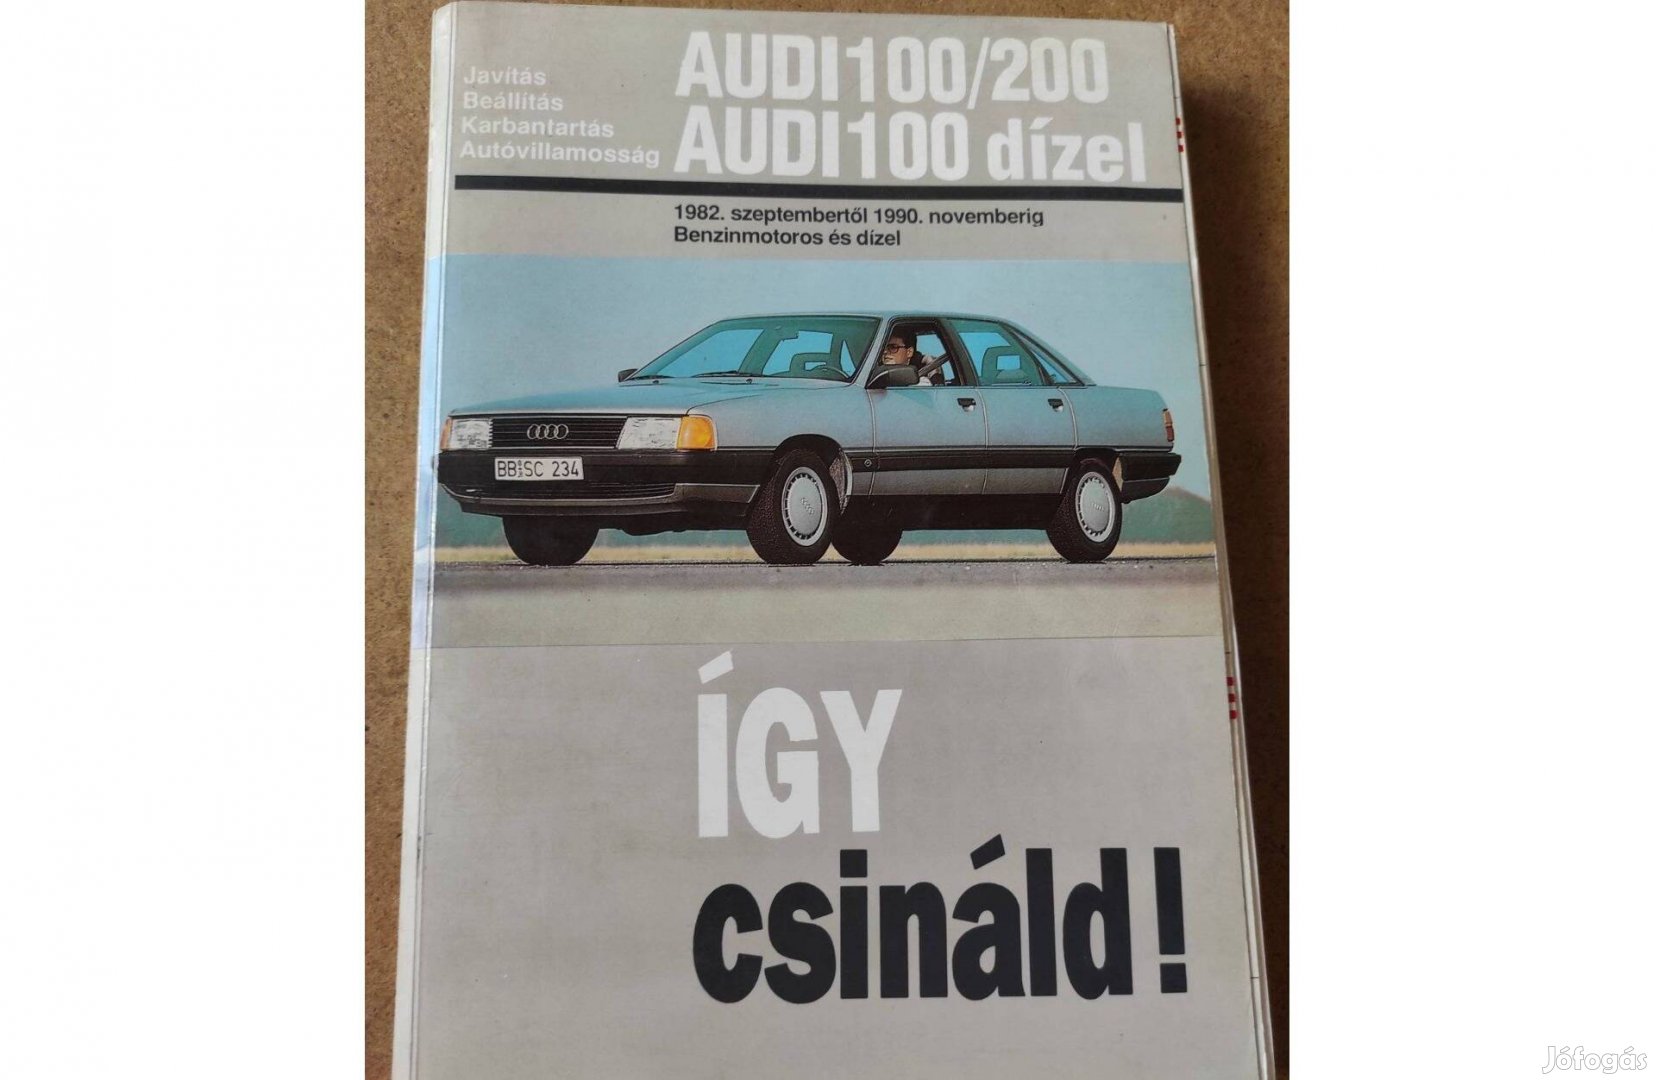 Audi 100, 200 javítási karbantartási. Így csináld